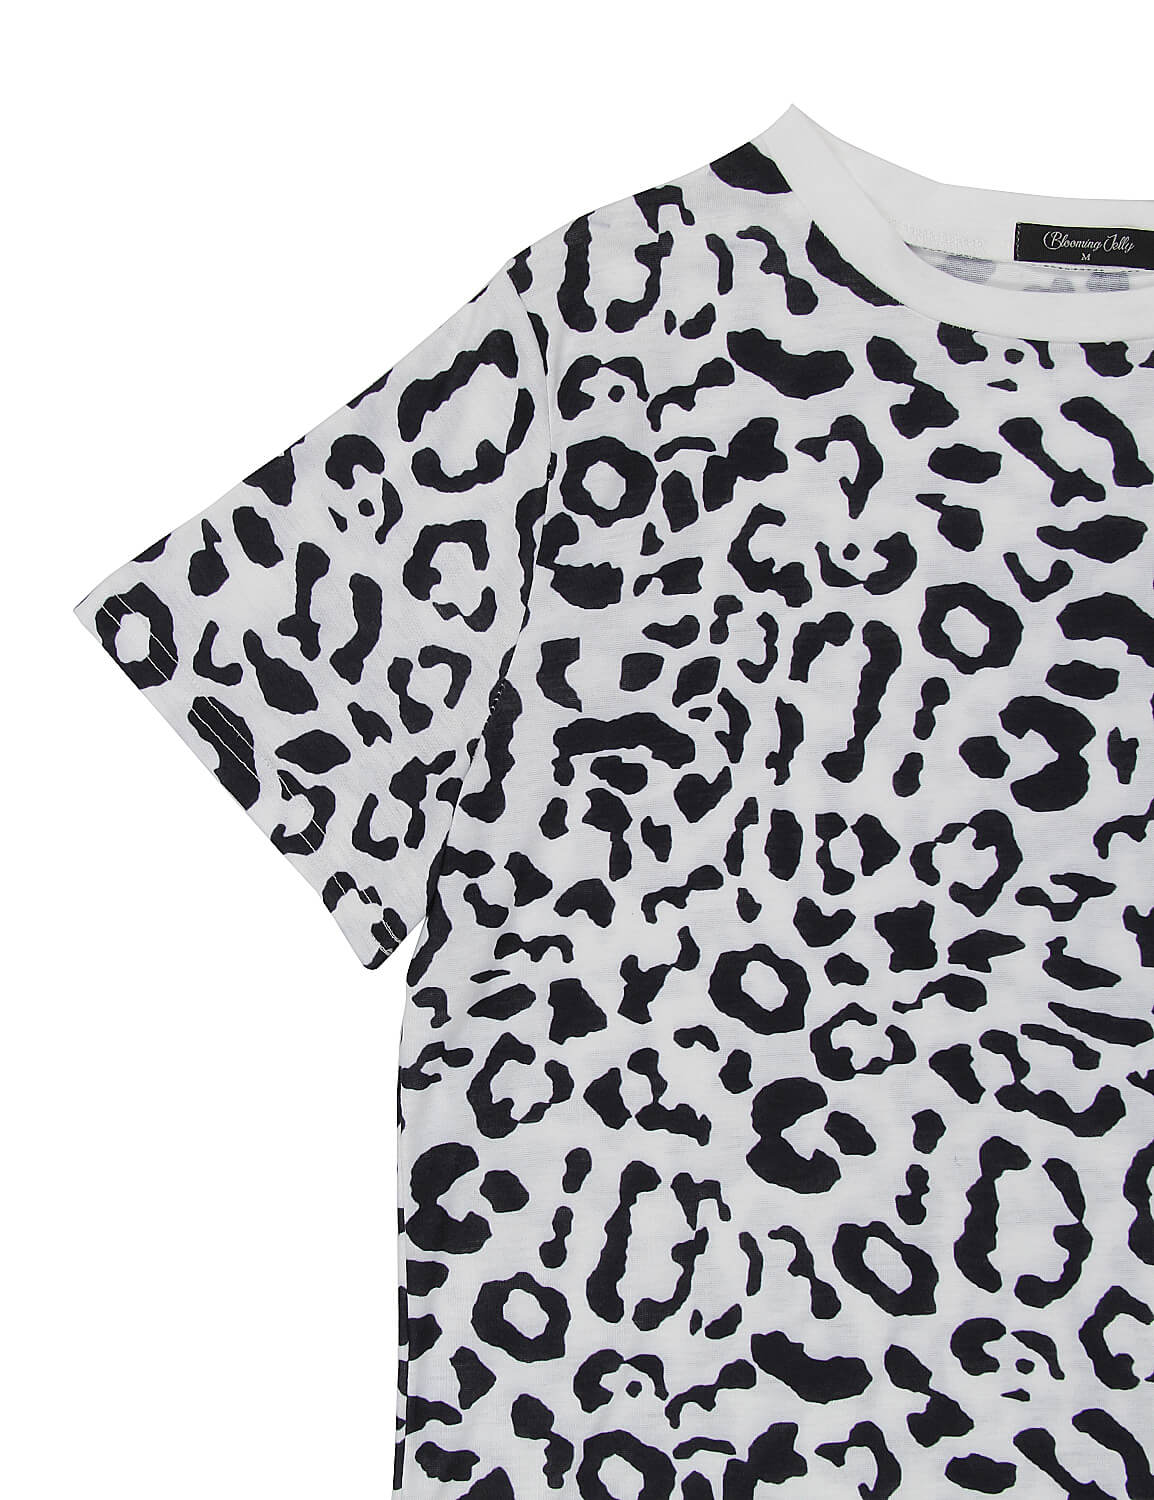 Cheetah Print Shirt Casual Leopard T-Shirt